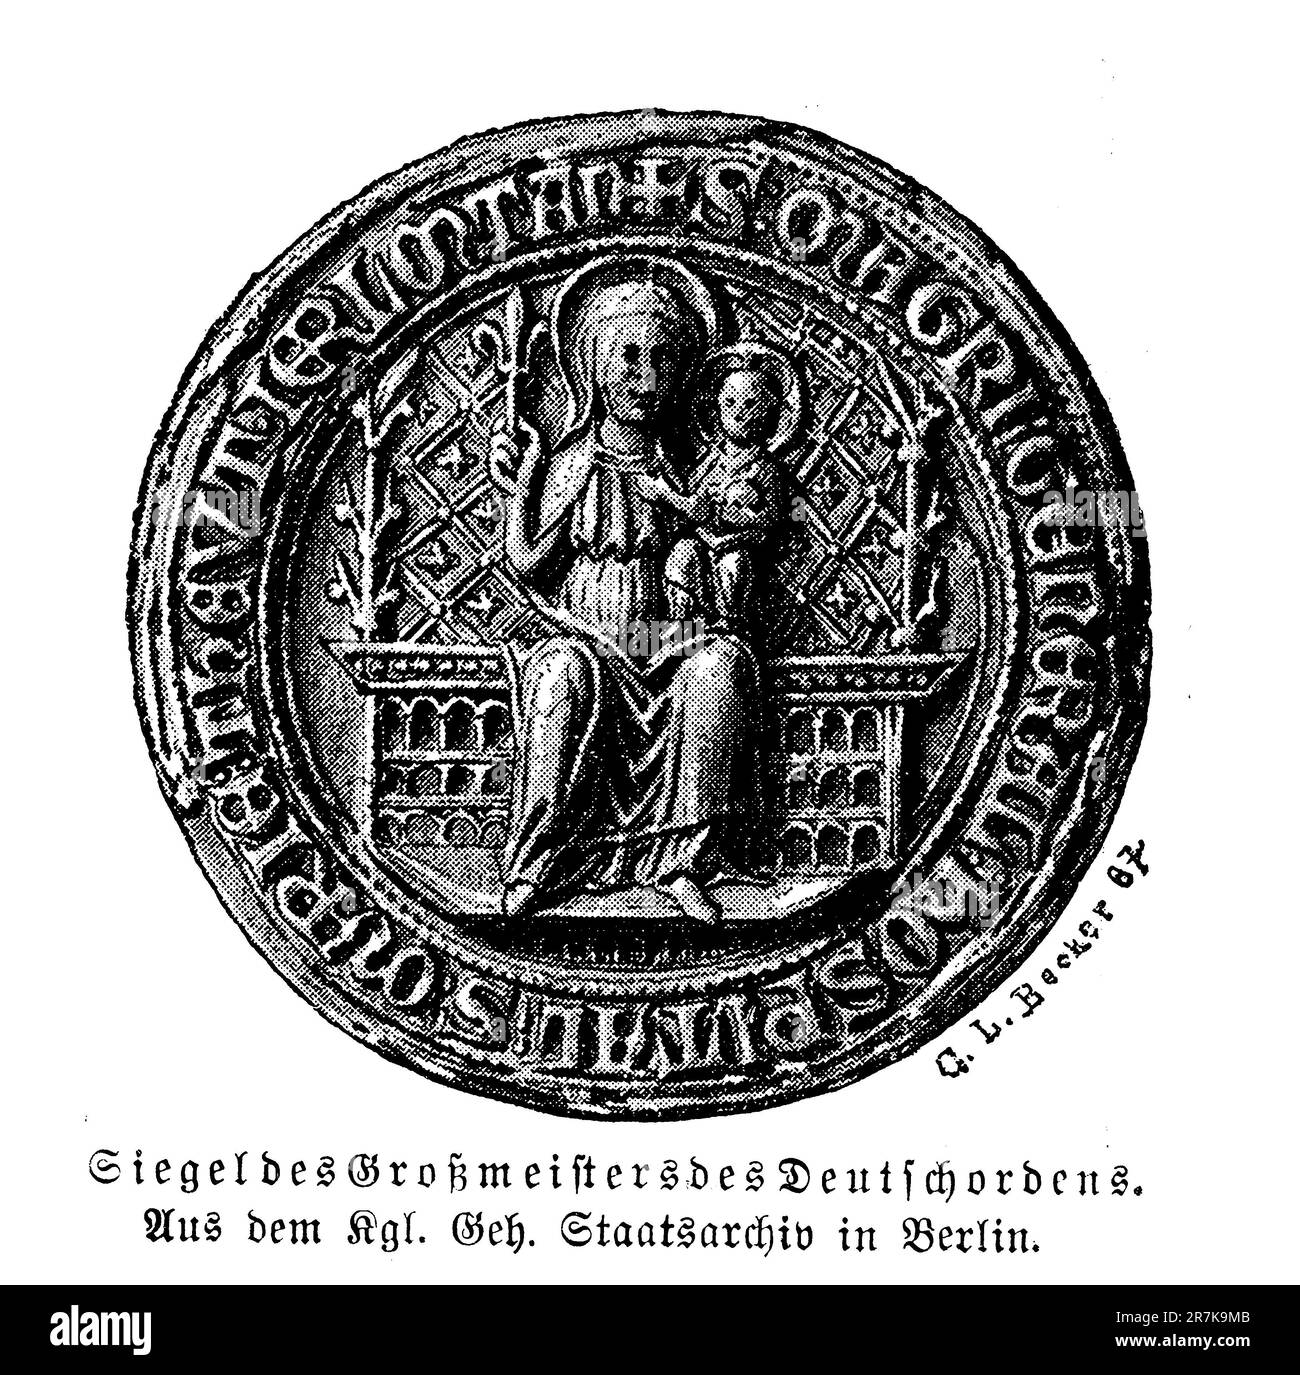 Historisches Siegel des Großmeisters des teutonischen Ordens, das seit mehr als 200 Jahren aus dem 13. Jahrhundert verwendet wird Stockfoto